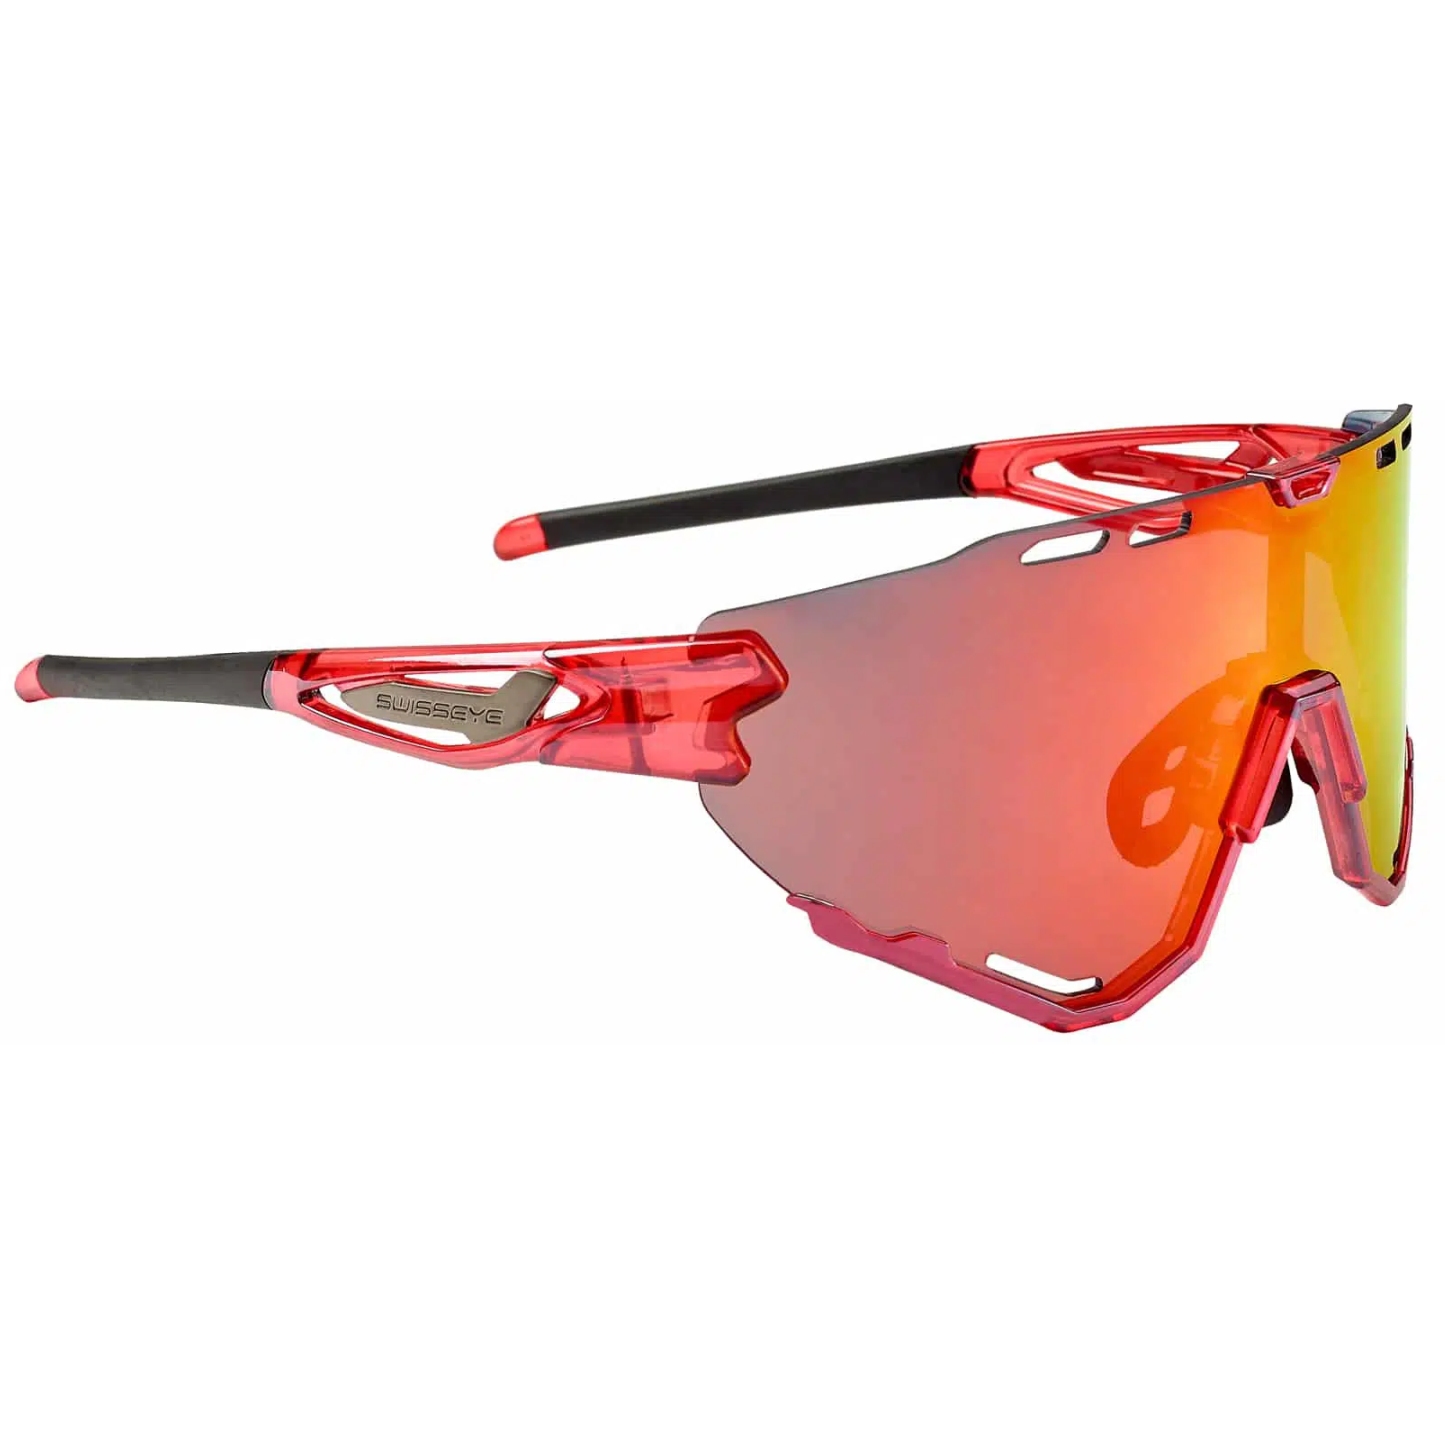 Produktbild von Swiss Eye Mantra Brille 13028 - Shiny Laser Red - Smoke BR Revo